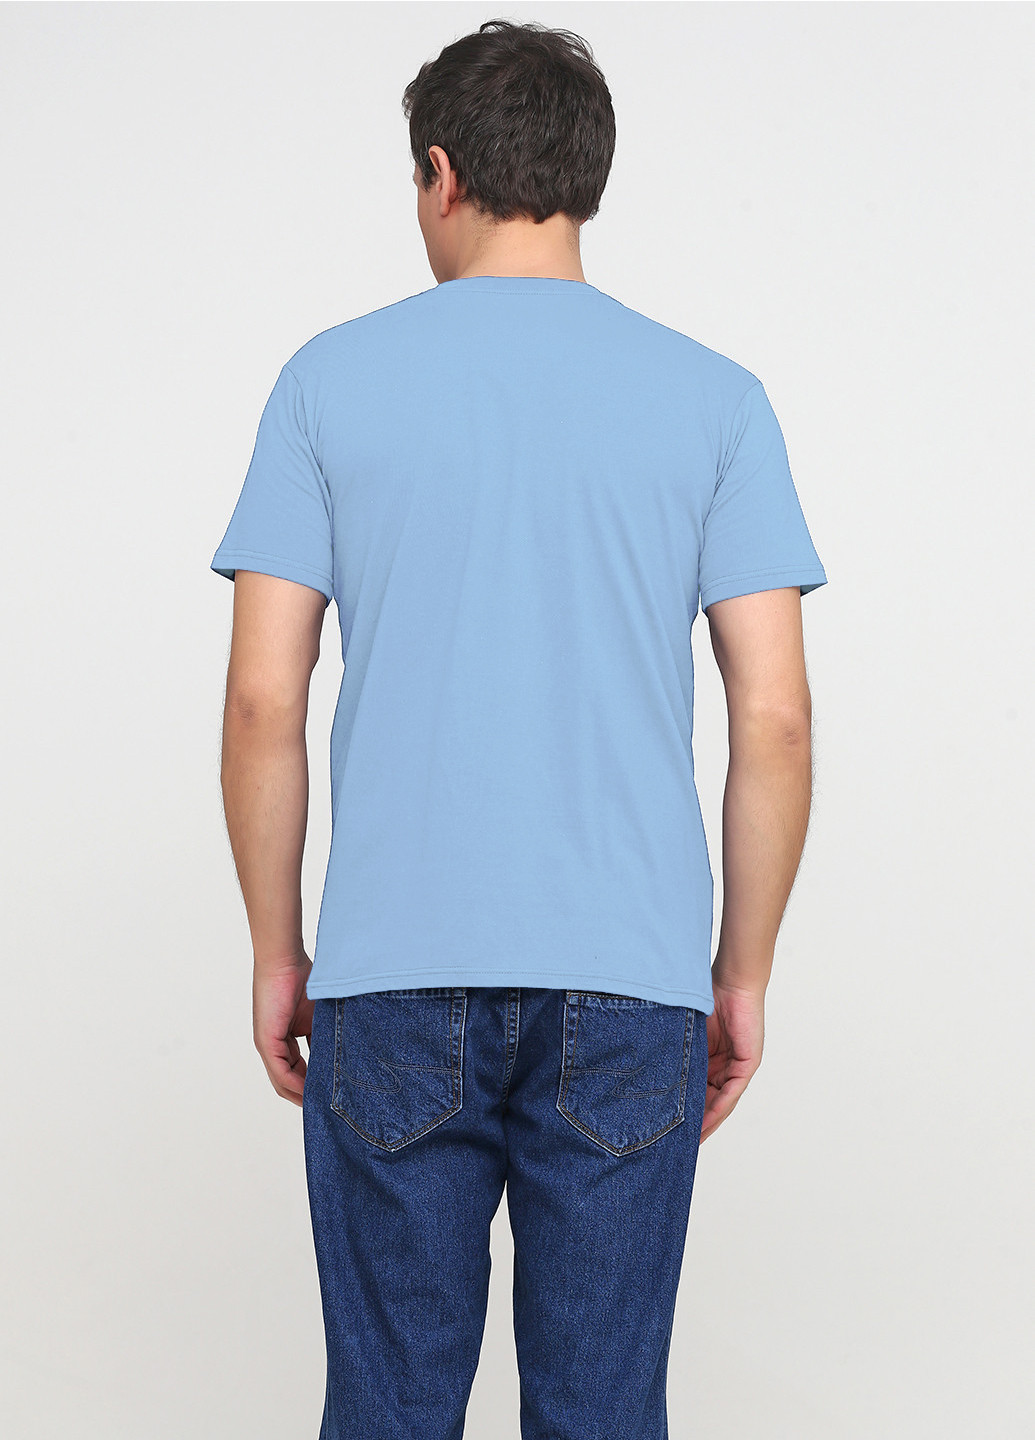 Голубая футболка мужская голубая 19м319-17 с принтом каратель с коротким рукавом Malta